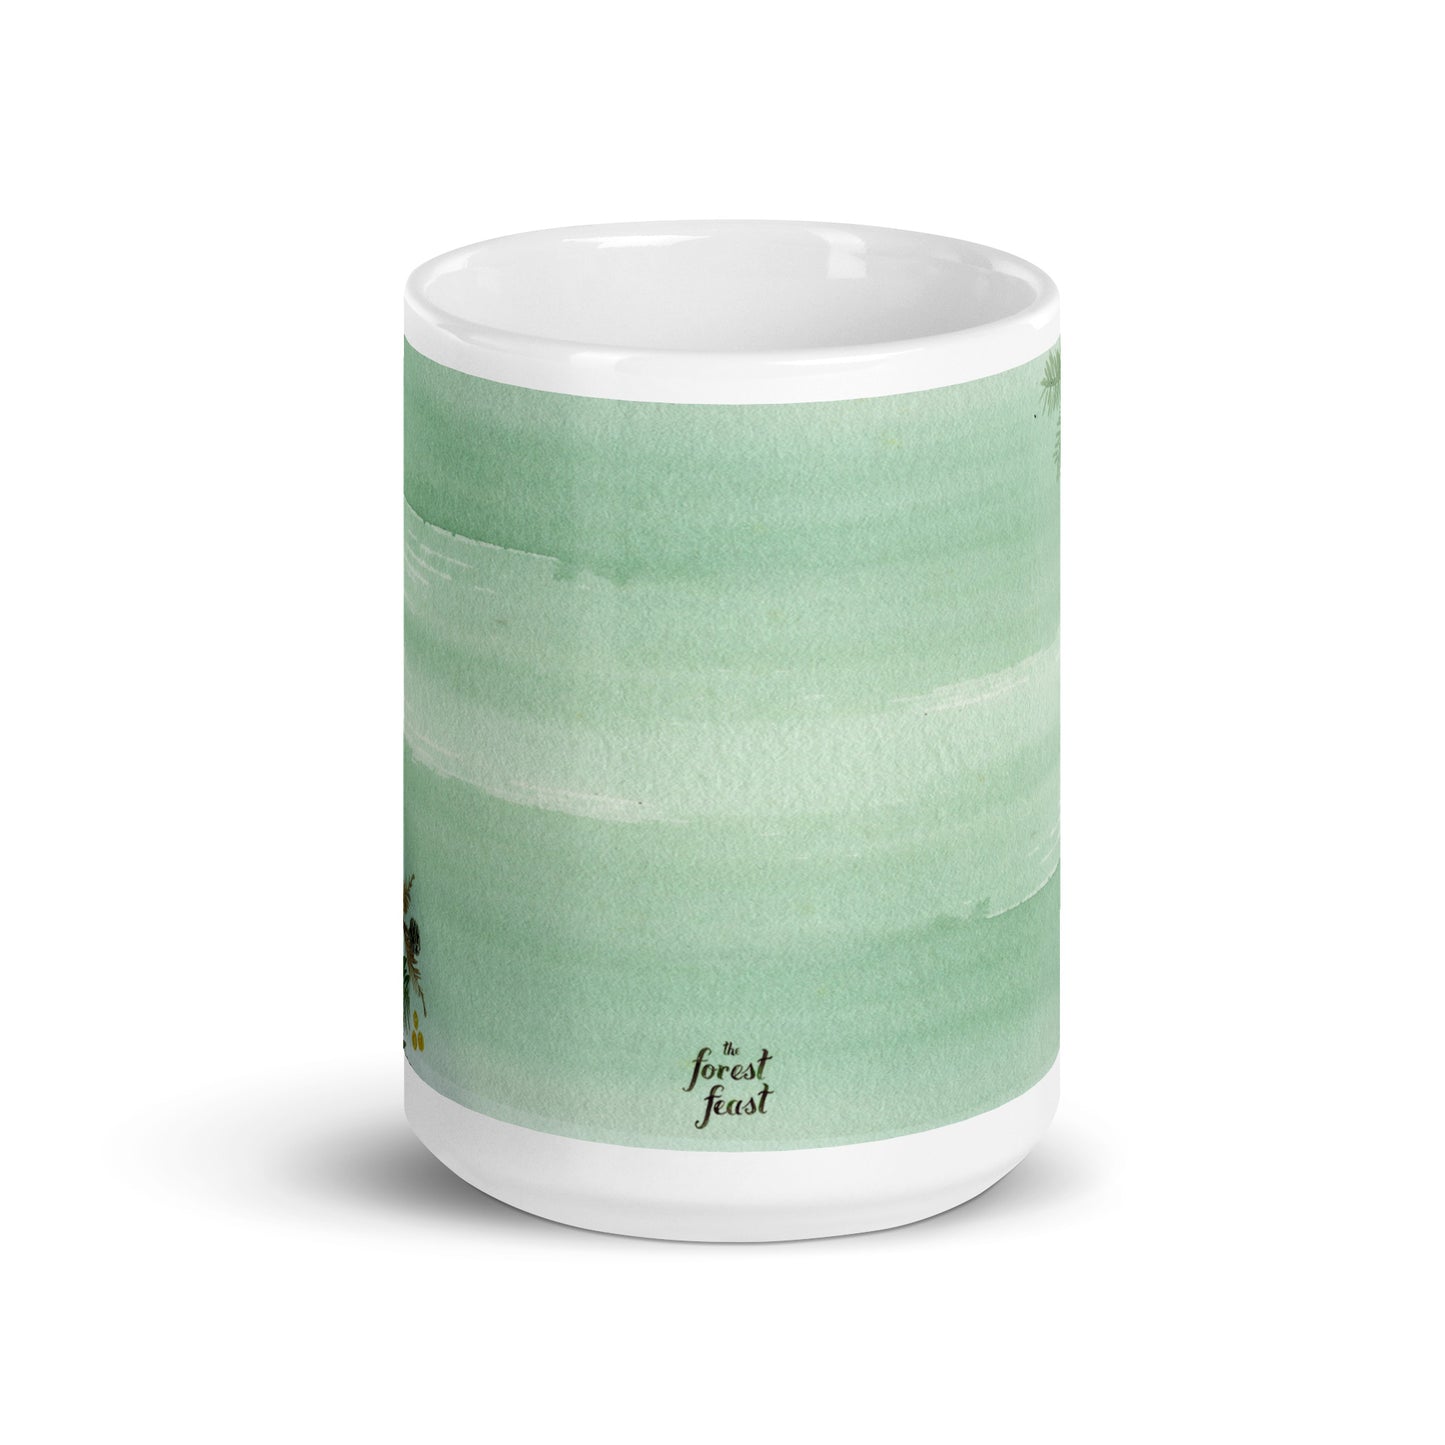 Winter Woods Ceramic Mug (15 oz)